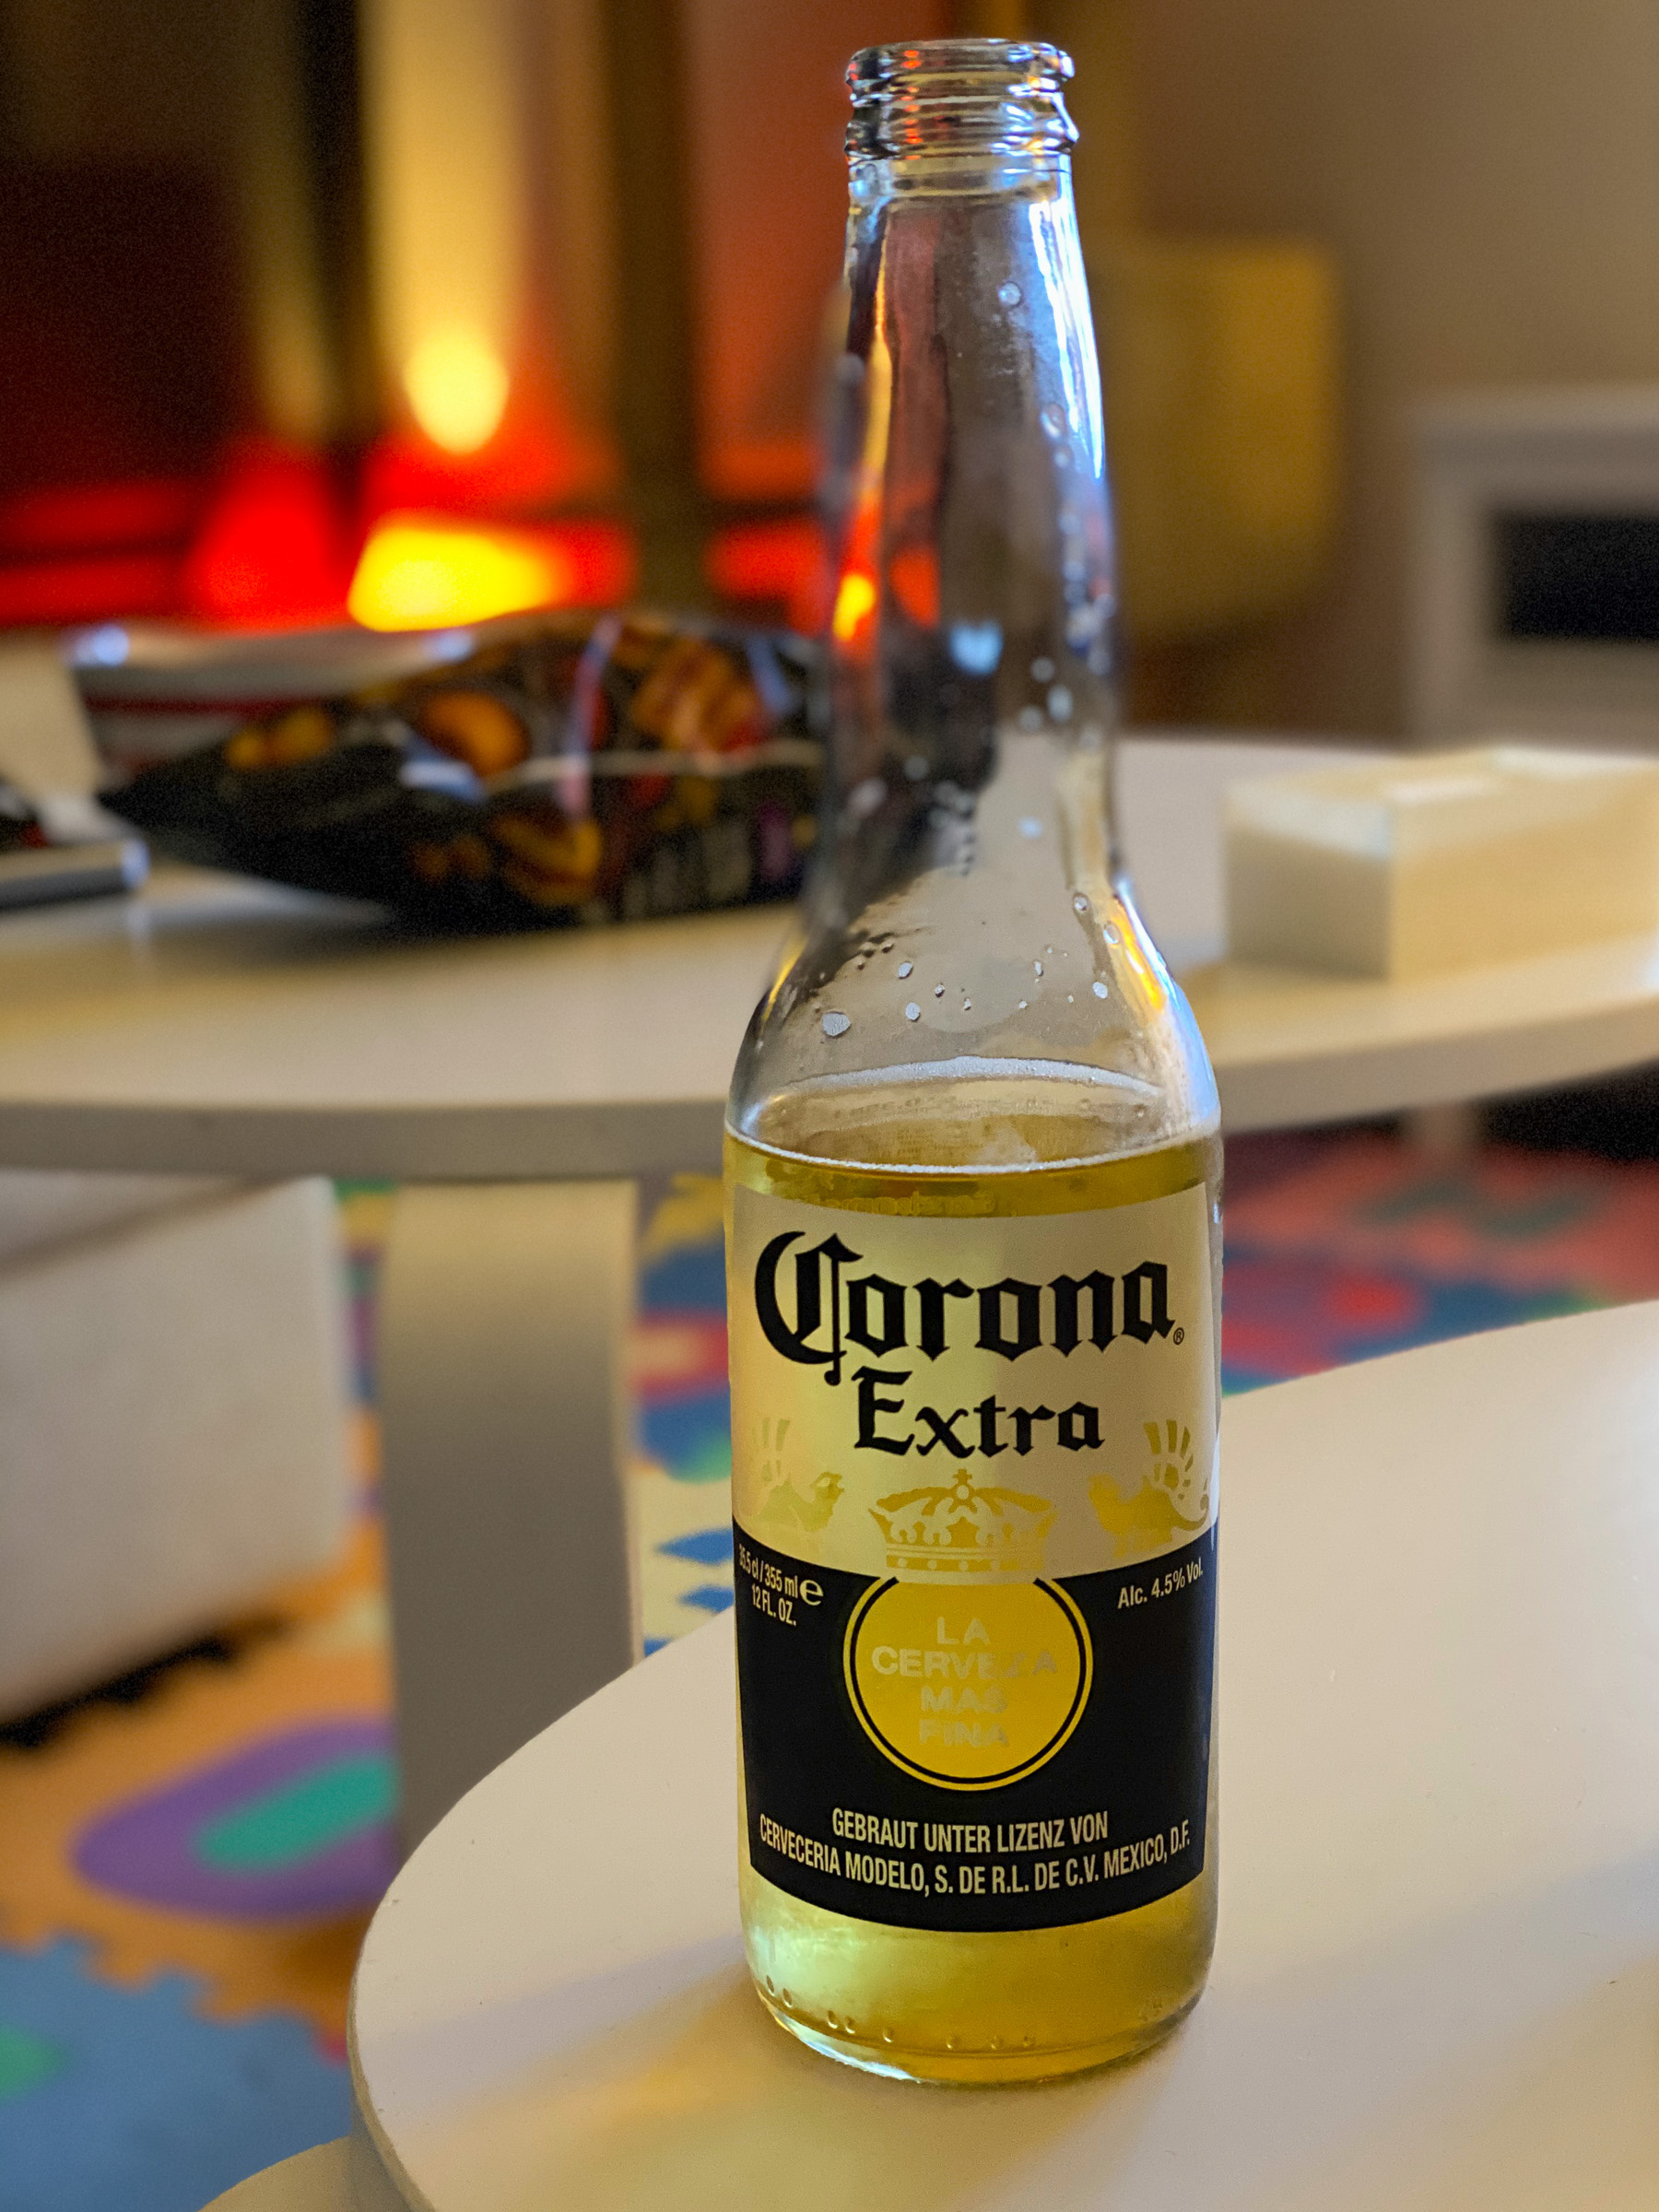 Eine Flasche des Biers Corona Extra auf einem Tisch.